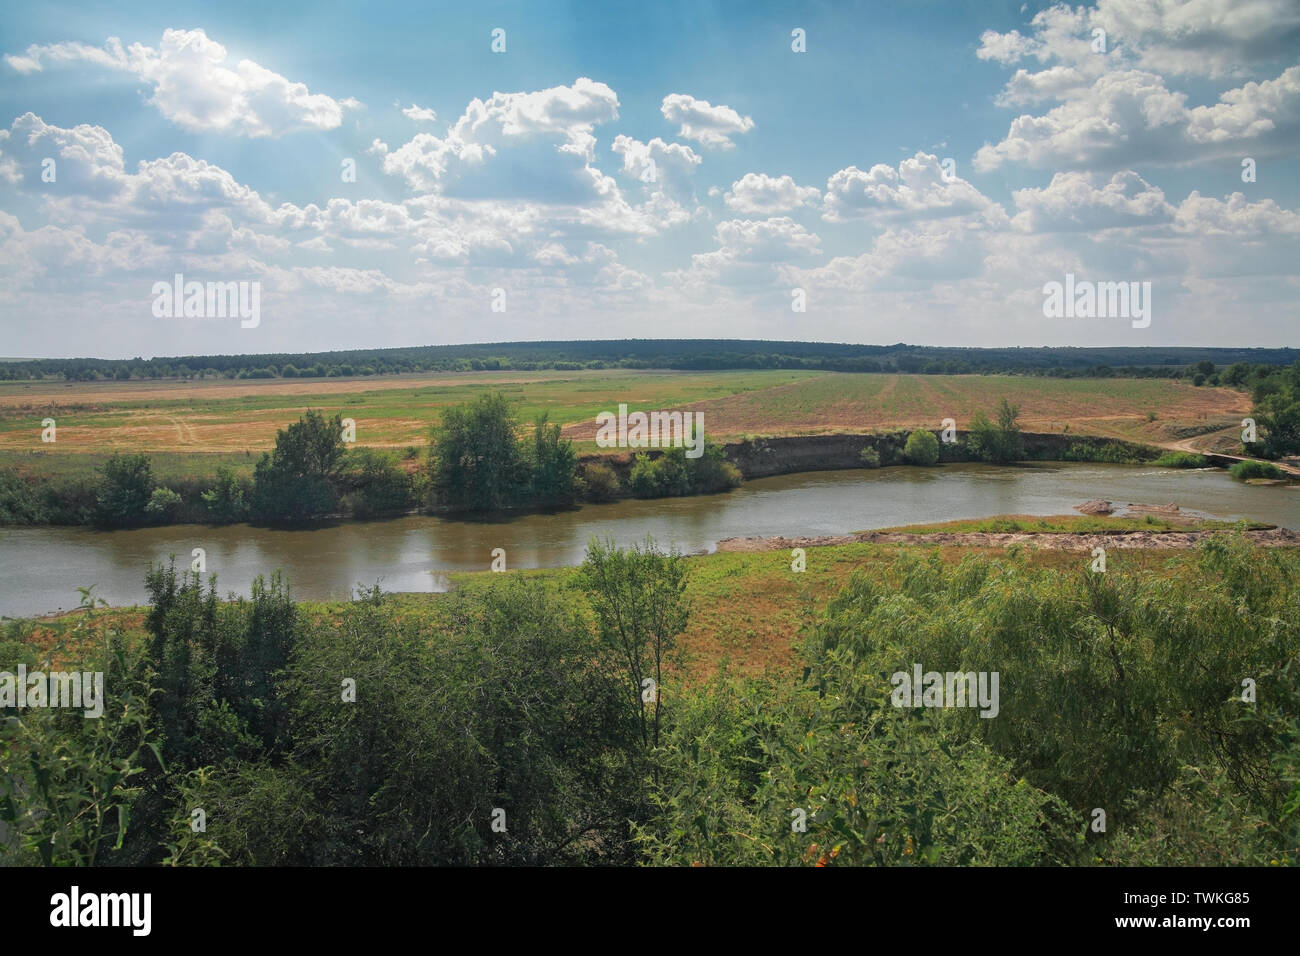 Paesaggio rurale, boccole, pascoli, sul fiume della foresta contro il cielo blu con nuvole Foto Stock